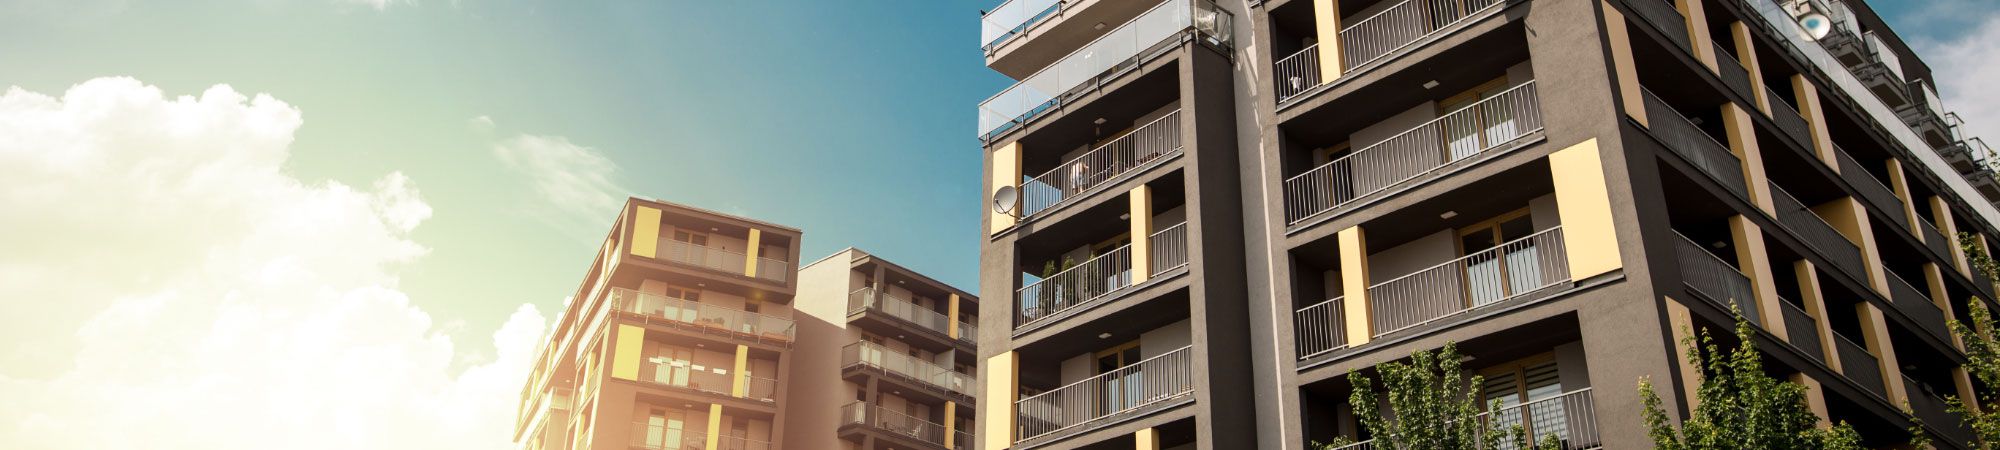 Con Inmobiliaria Viviendas Costa de la Luz encontrará la vivienda que está buscando. VIVIENDAS COSTA DE LA LUZ en Sanlúcar De Barrameda